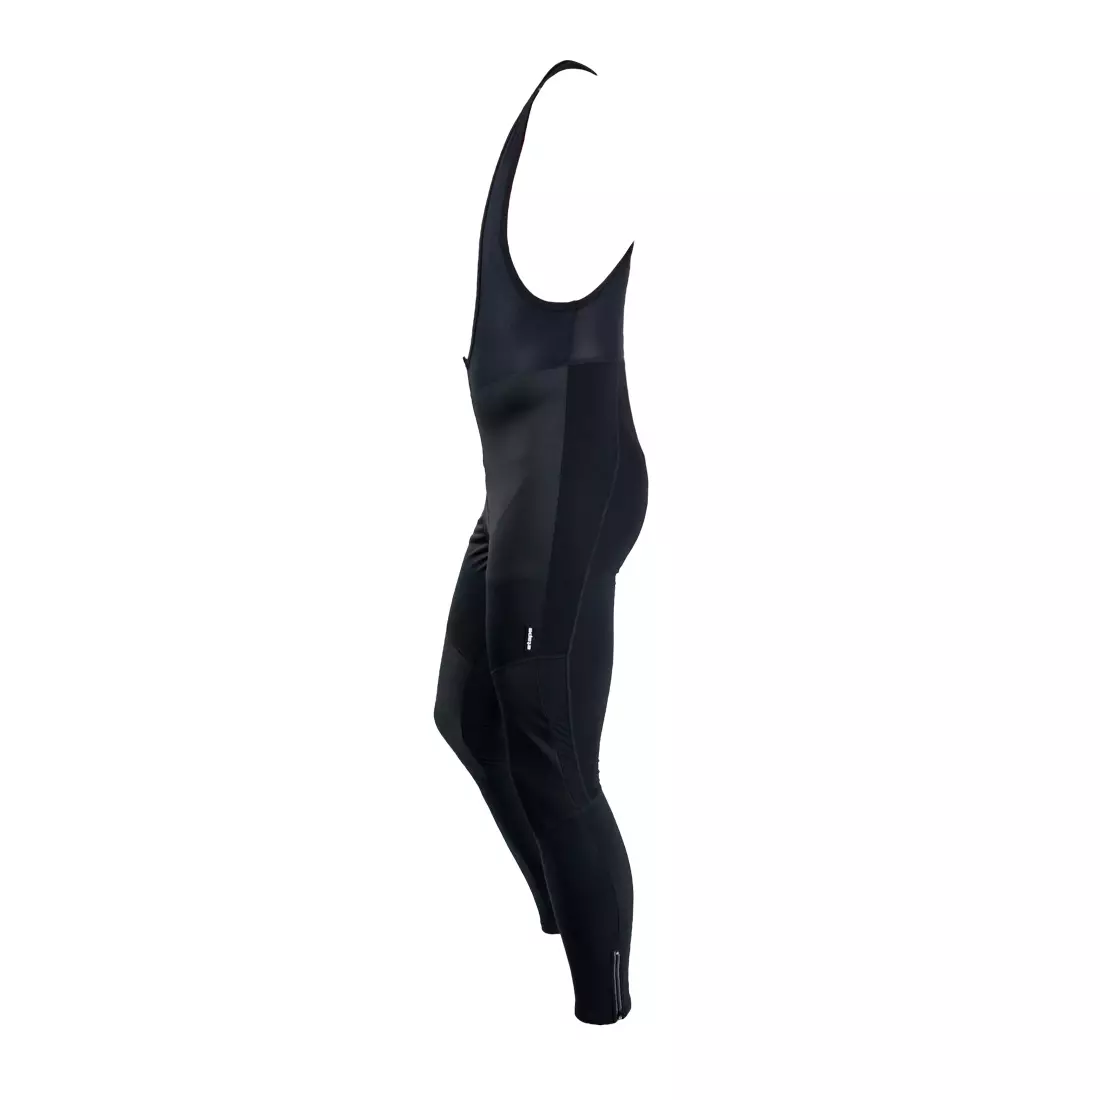 ETAPE SPRINTER - WS Softshell '13 - pánske zateplené nohavice s vsadkou - farba: Čierna